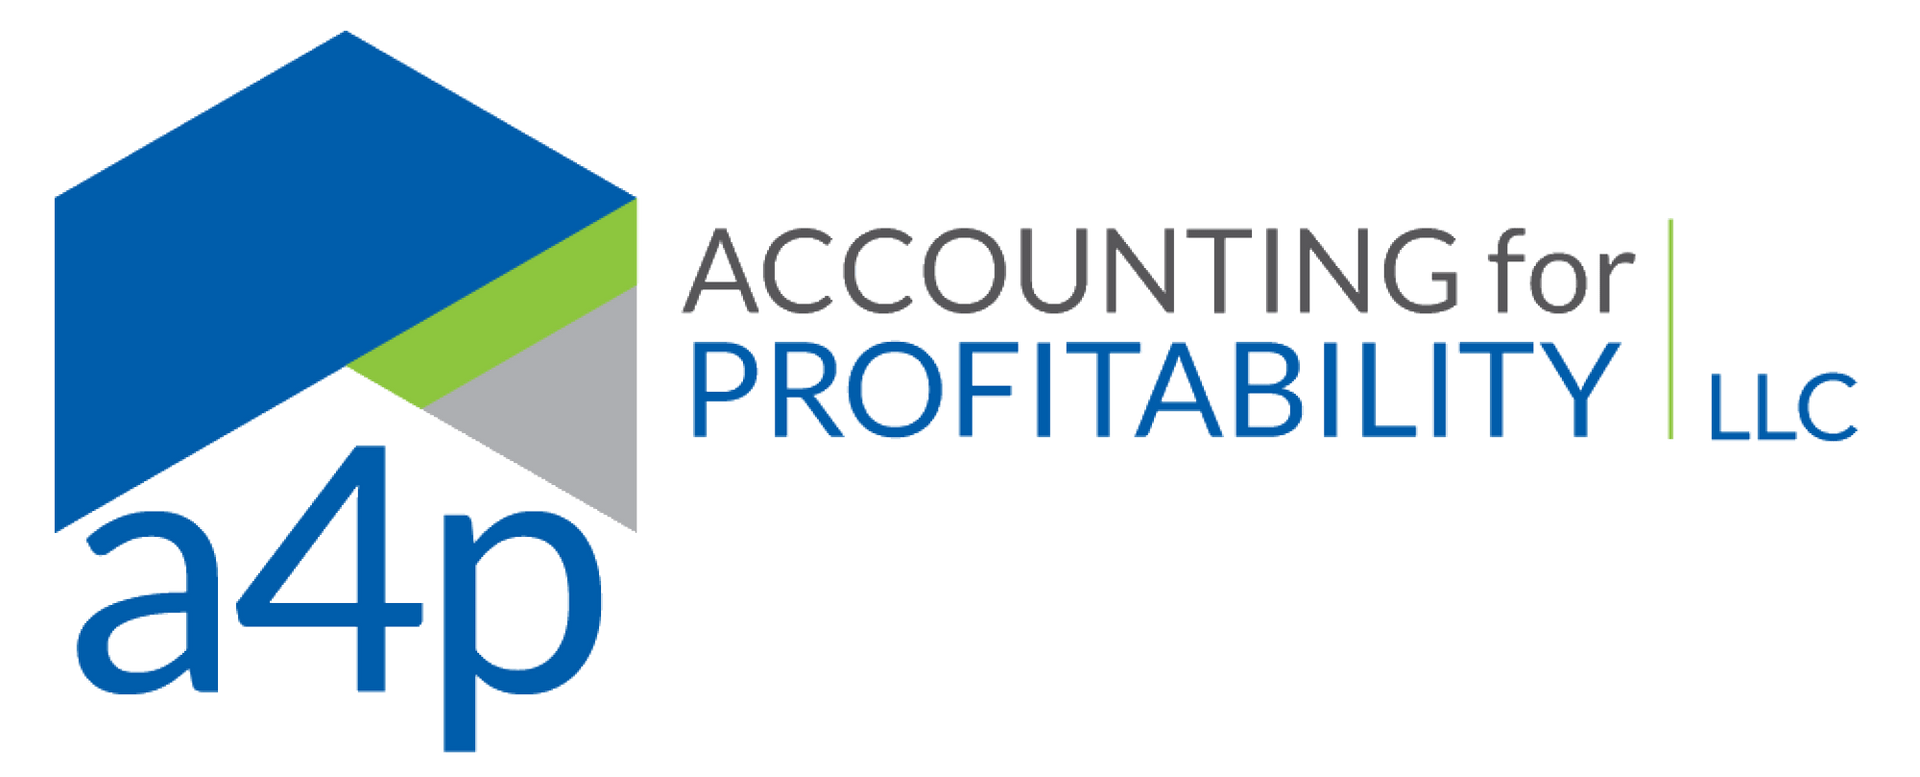 Accounting 4 Profitability LLC